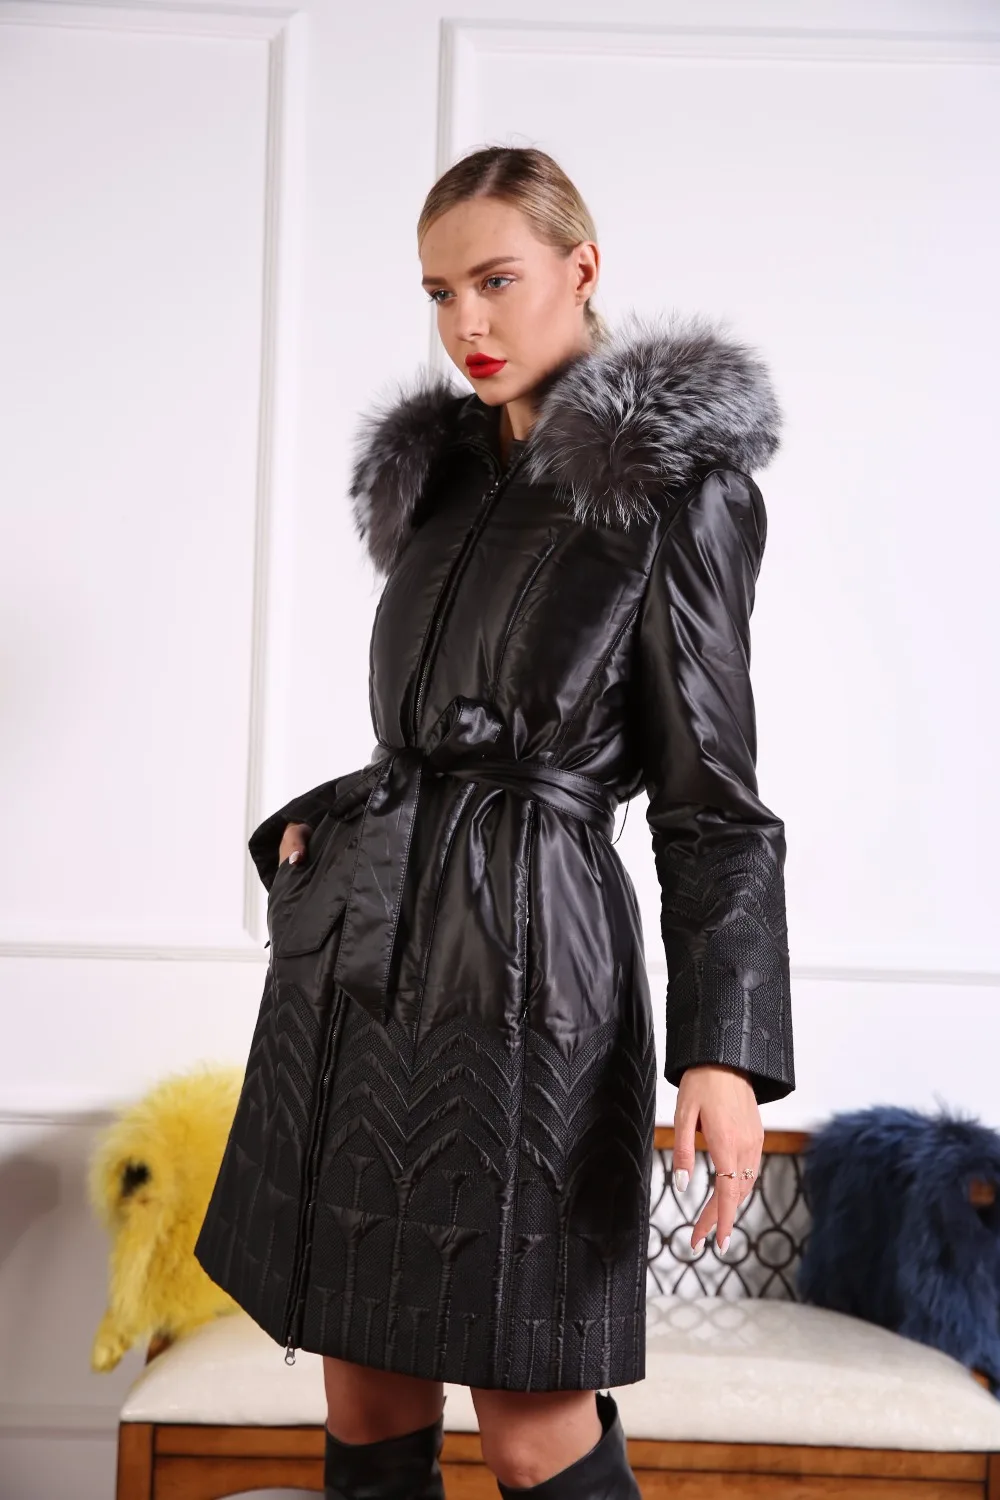 Azzimia Для женщин Зимние теплые пальто Черная парка 3m Thinsulate Подкладка теплая одежда большой серебристого лисьего меховой воротник Большие размеры 4XL 16W-16